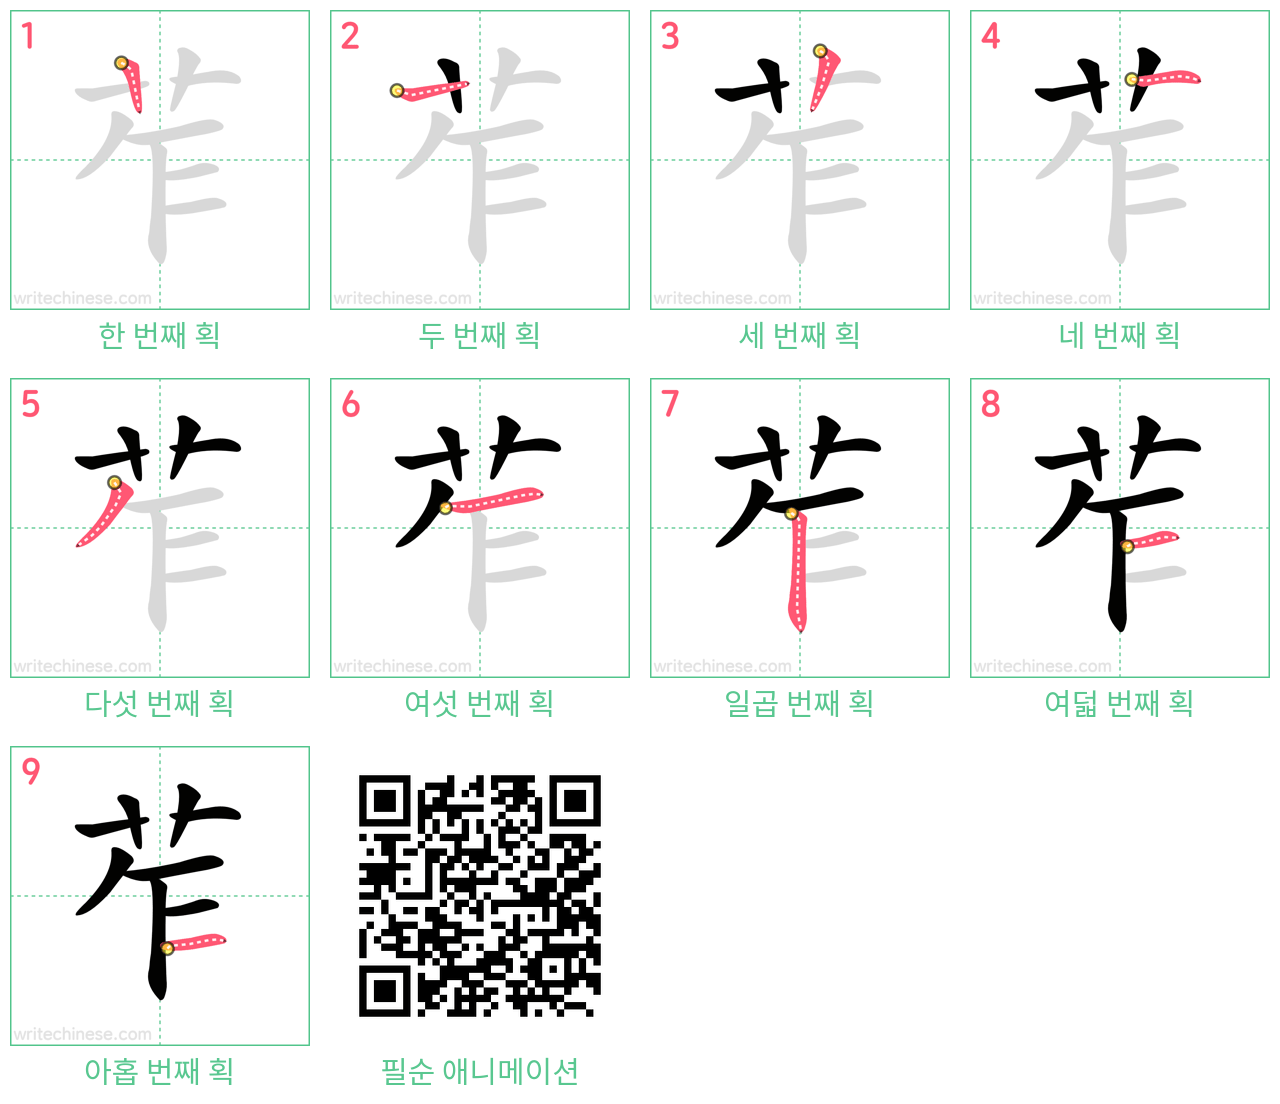 苲 step-by-step stroke order diagrams